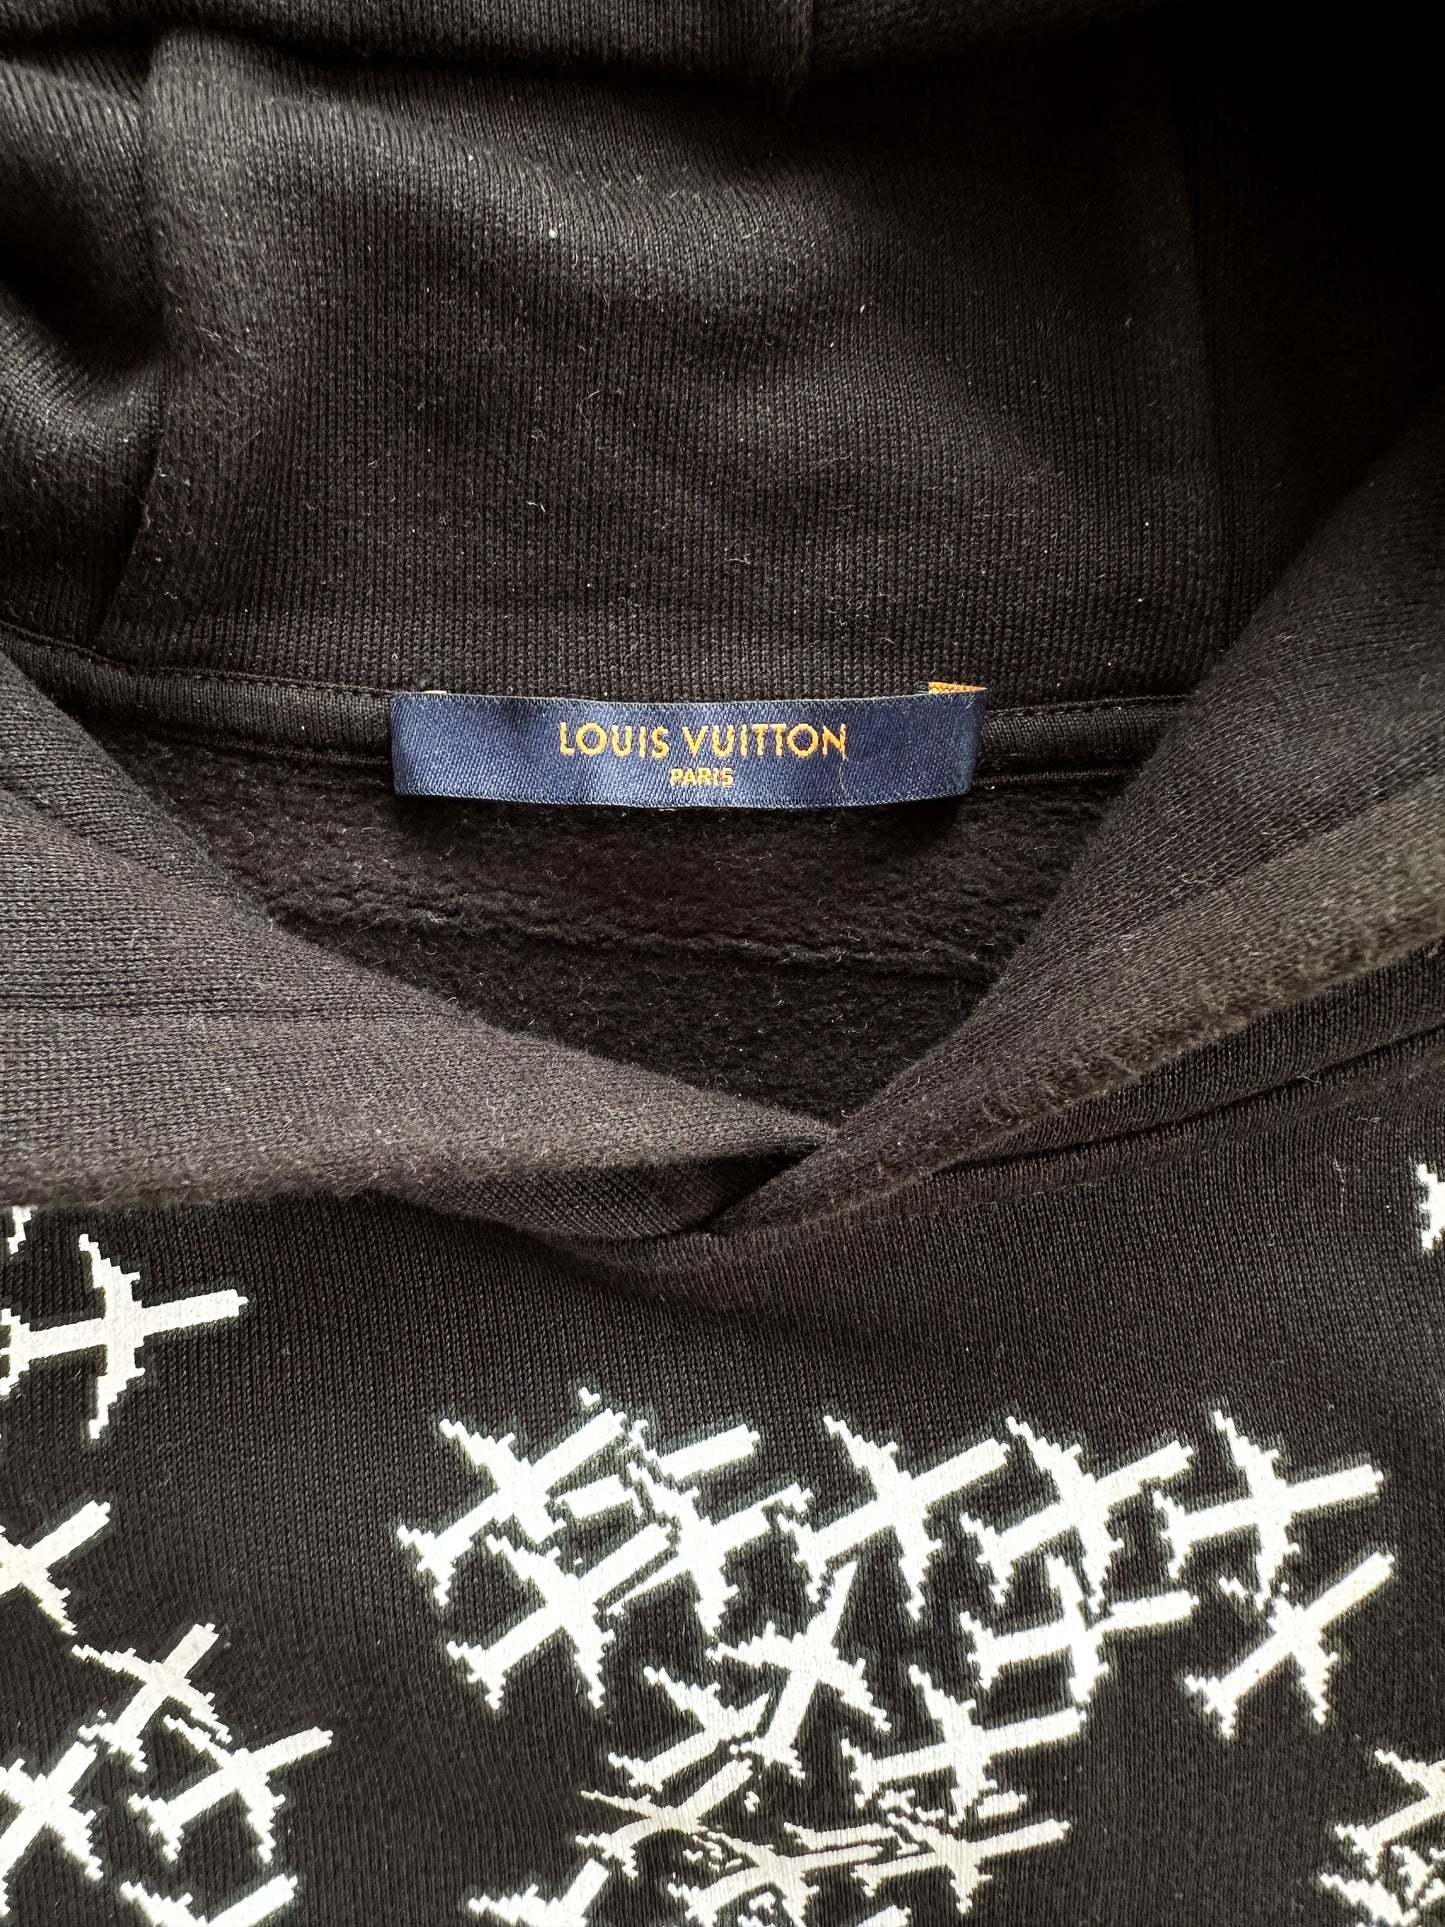 Louis Vuitton 2019 Planes Printed Hoodie - Black Sweaters